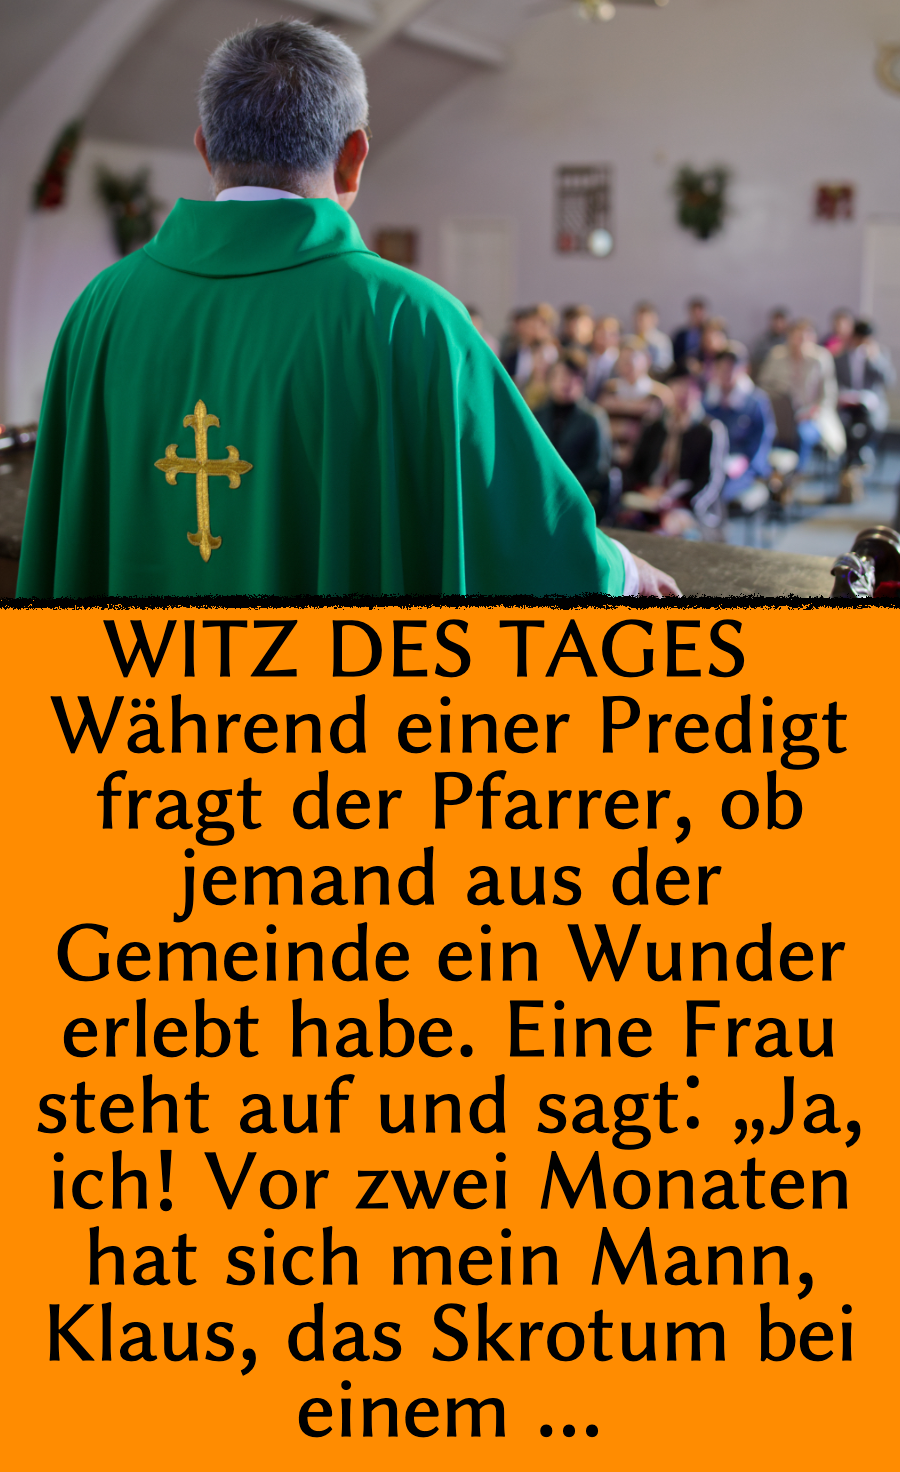 Kirchenwitz: Frau blamiert Ehemann während einer Predigt